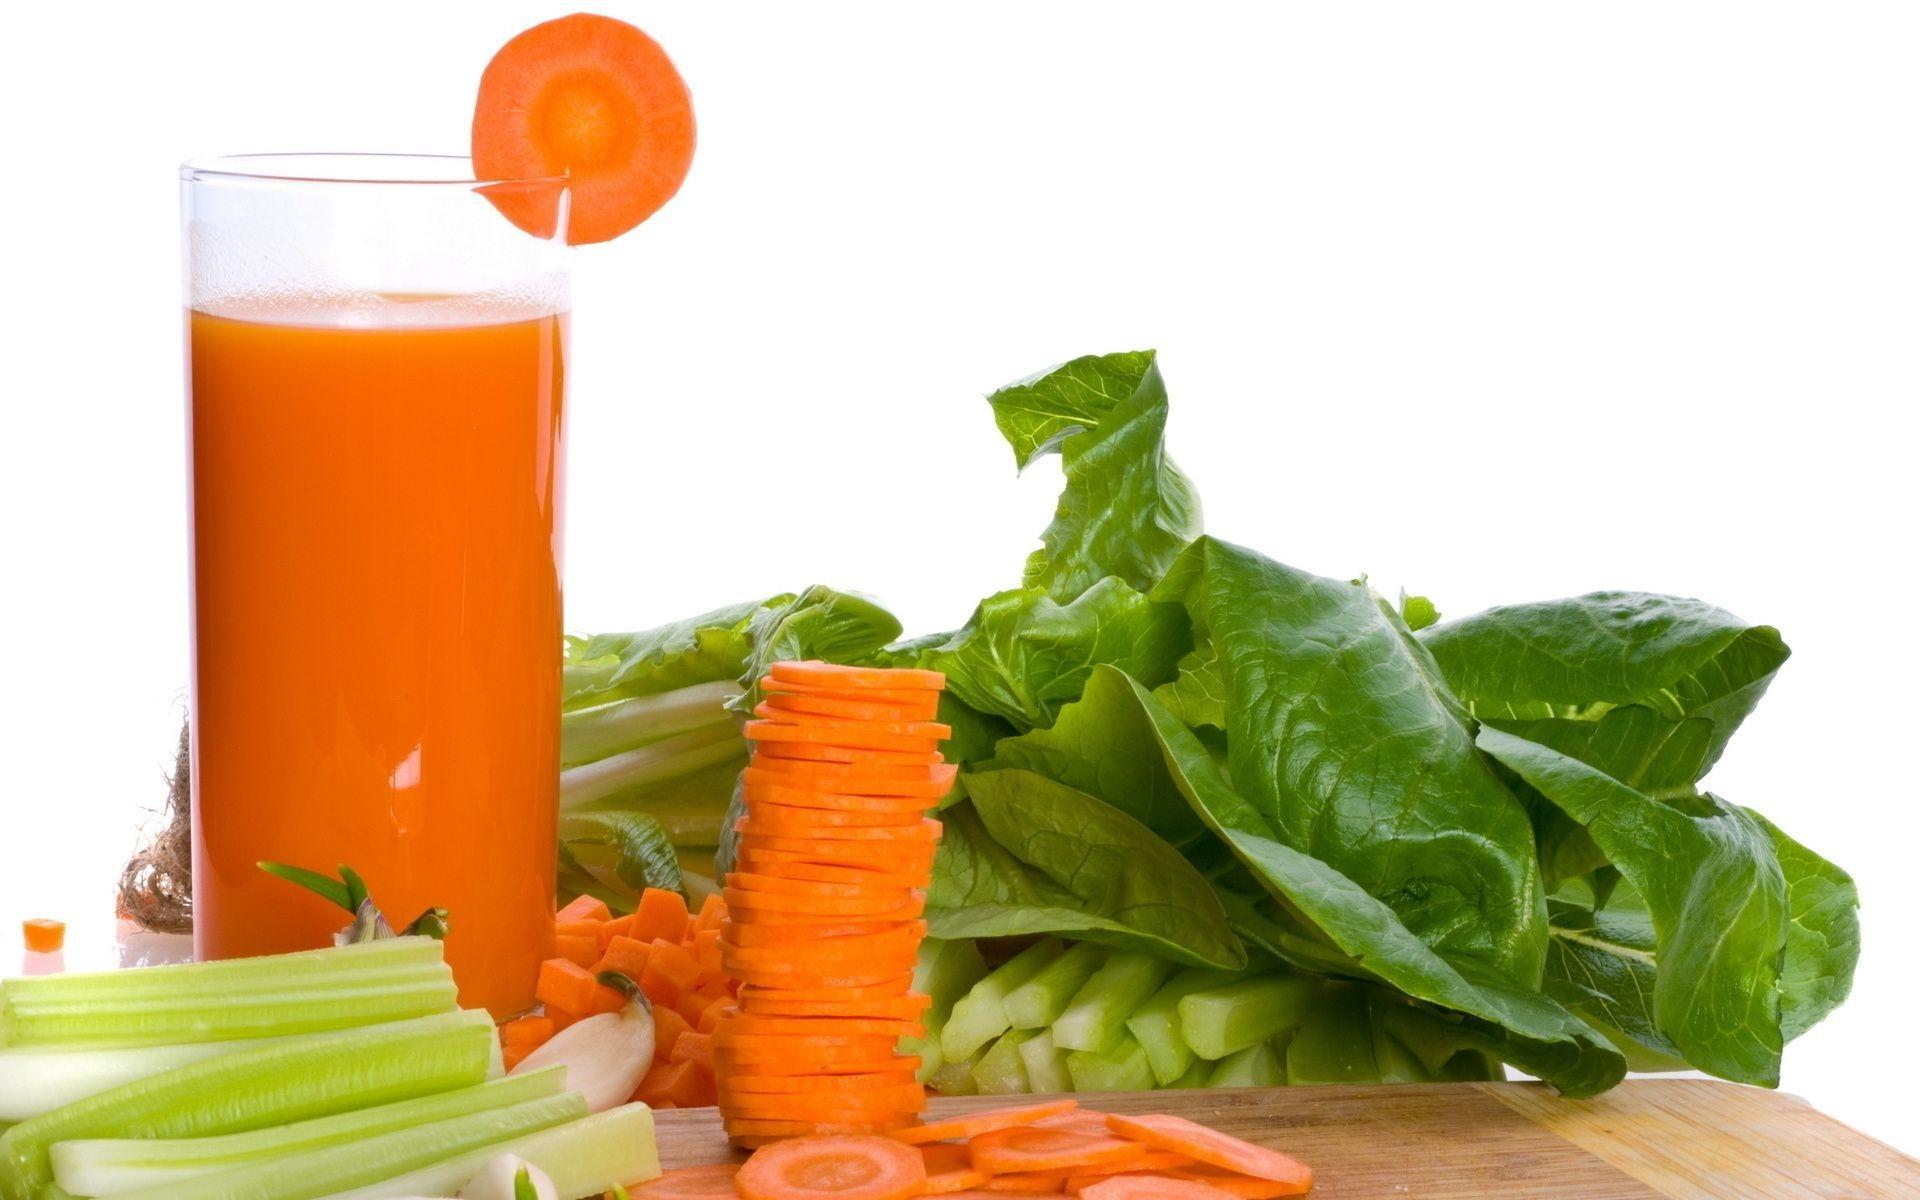 Drinks leaf health food juice nutrition vegetable celery vitamin